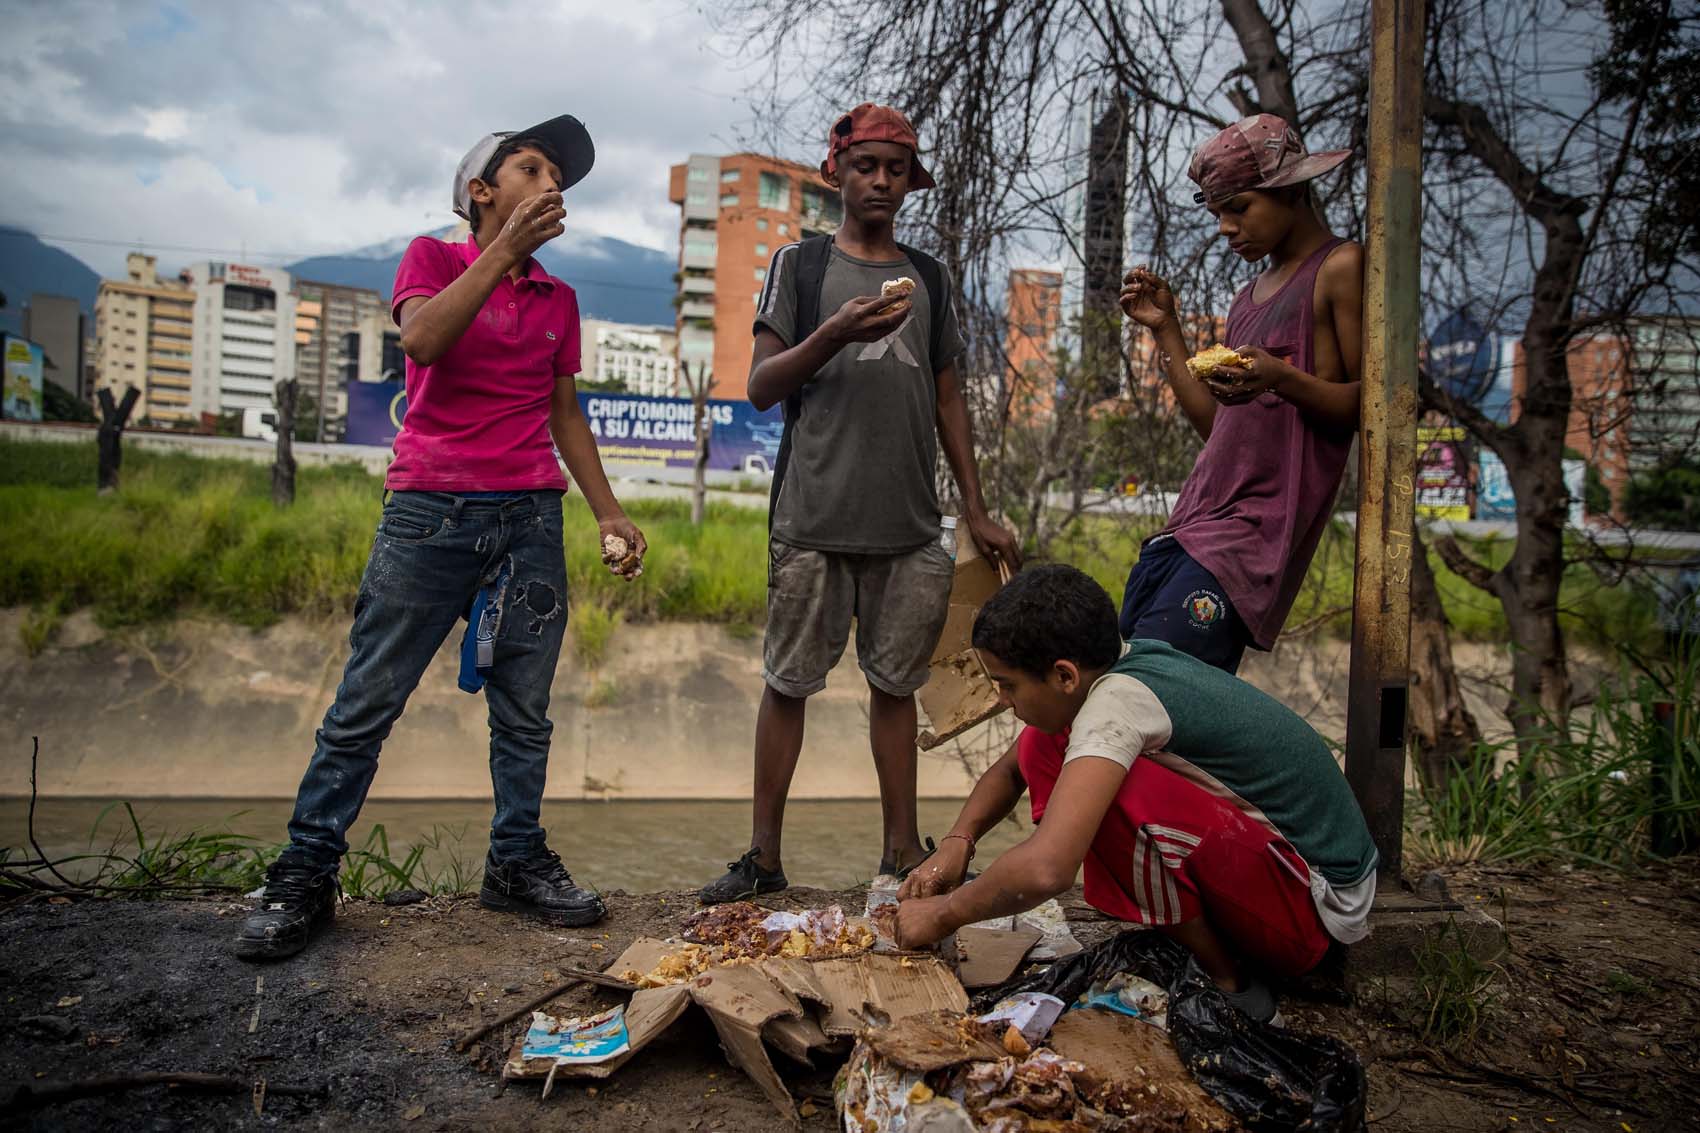 La Unicef alerta sobre la precaria situación de miles de niños venezolanos